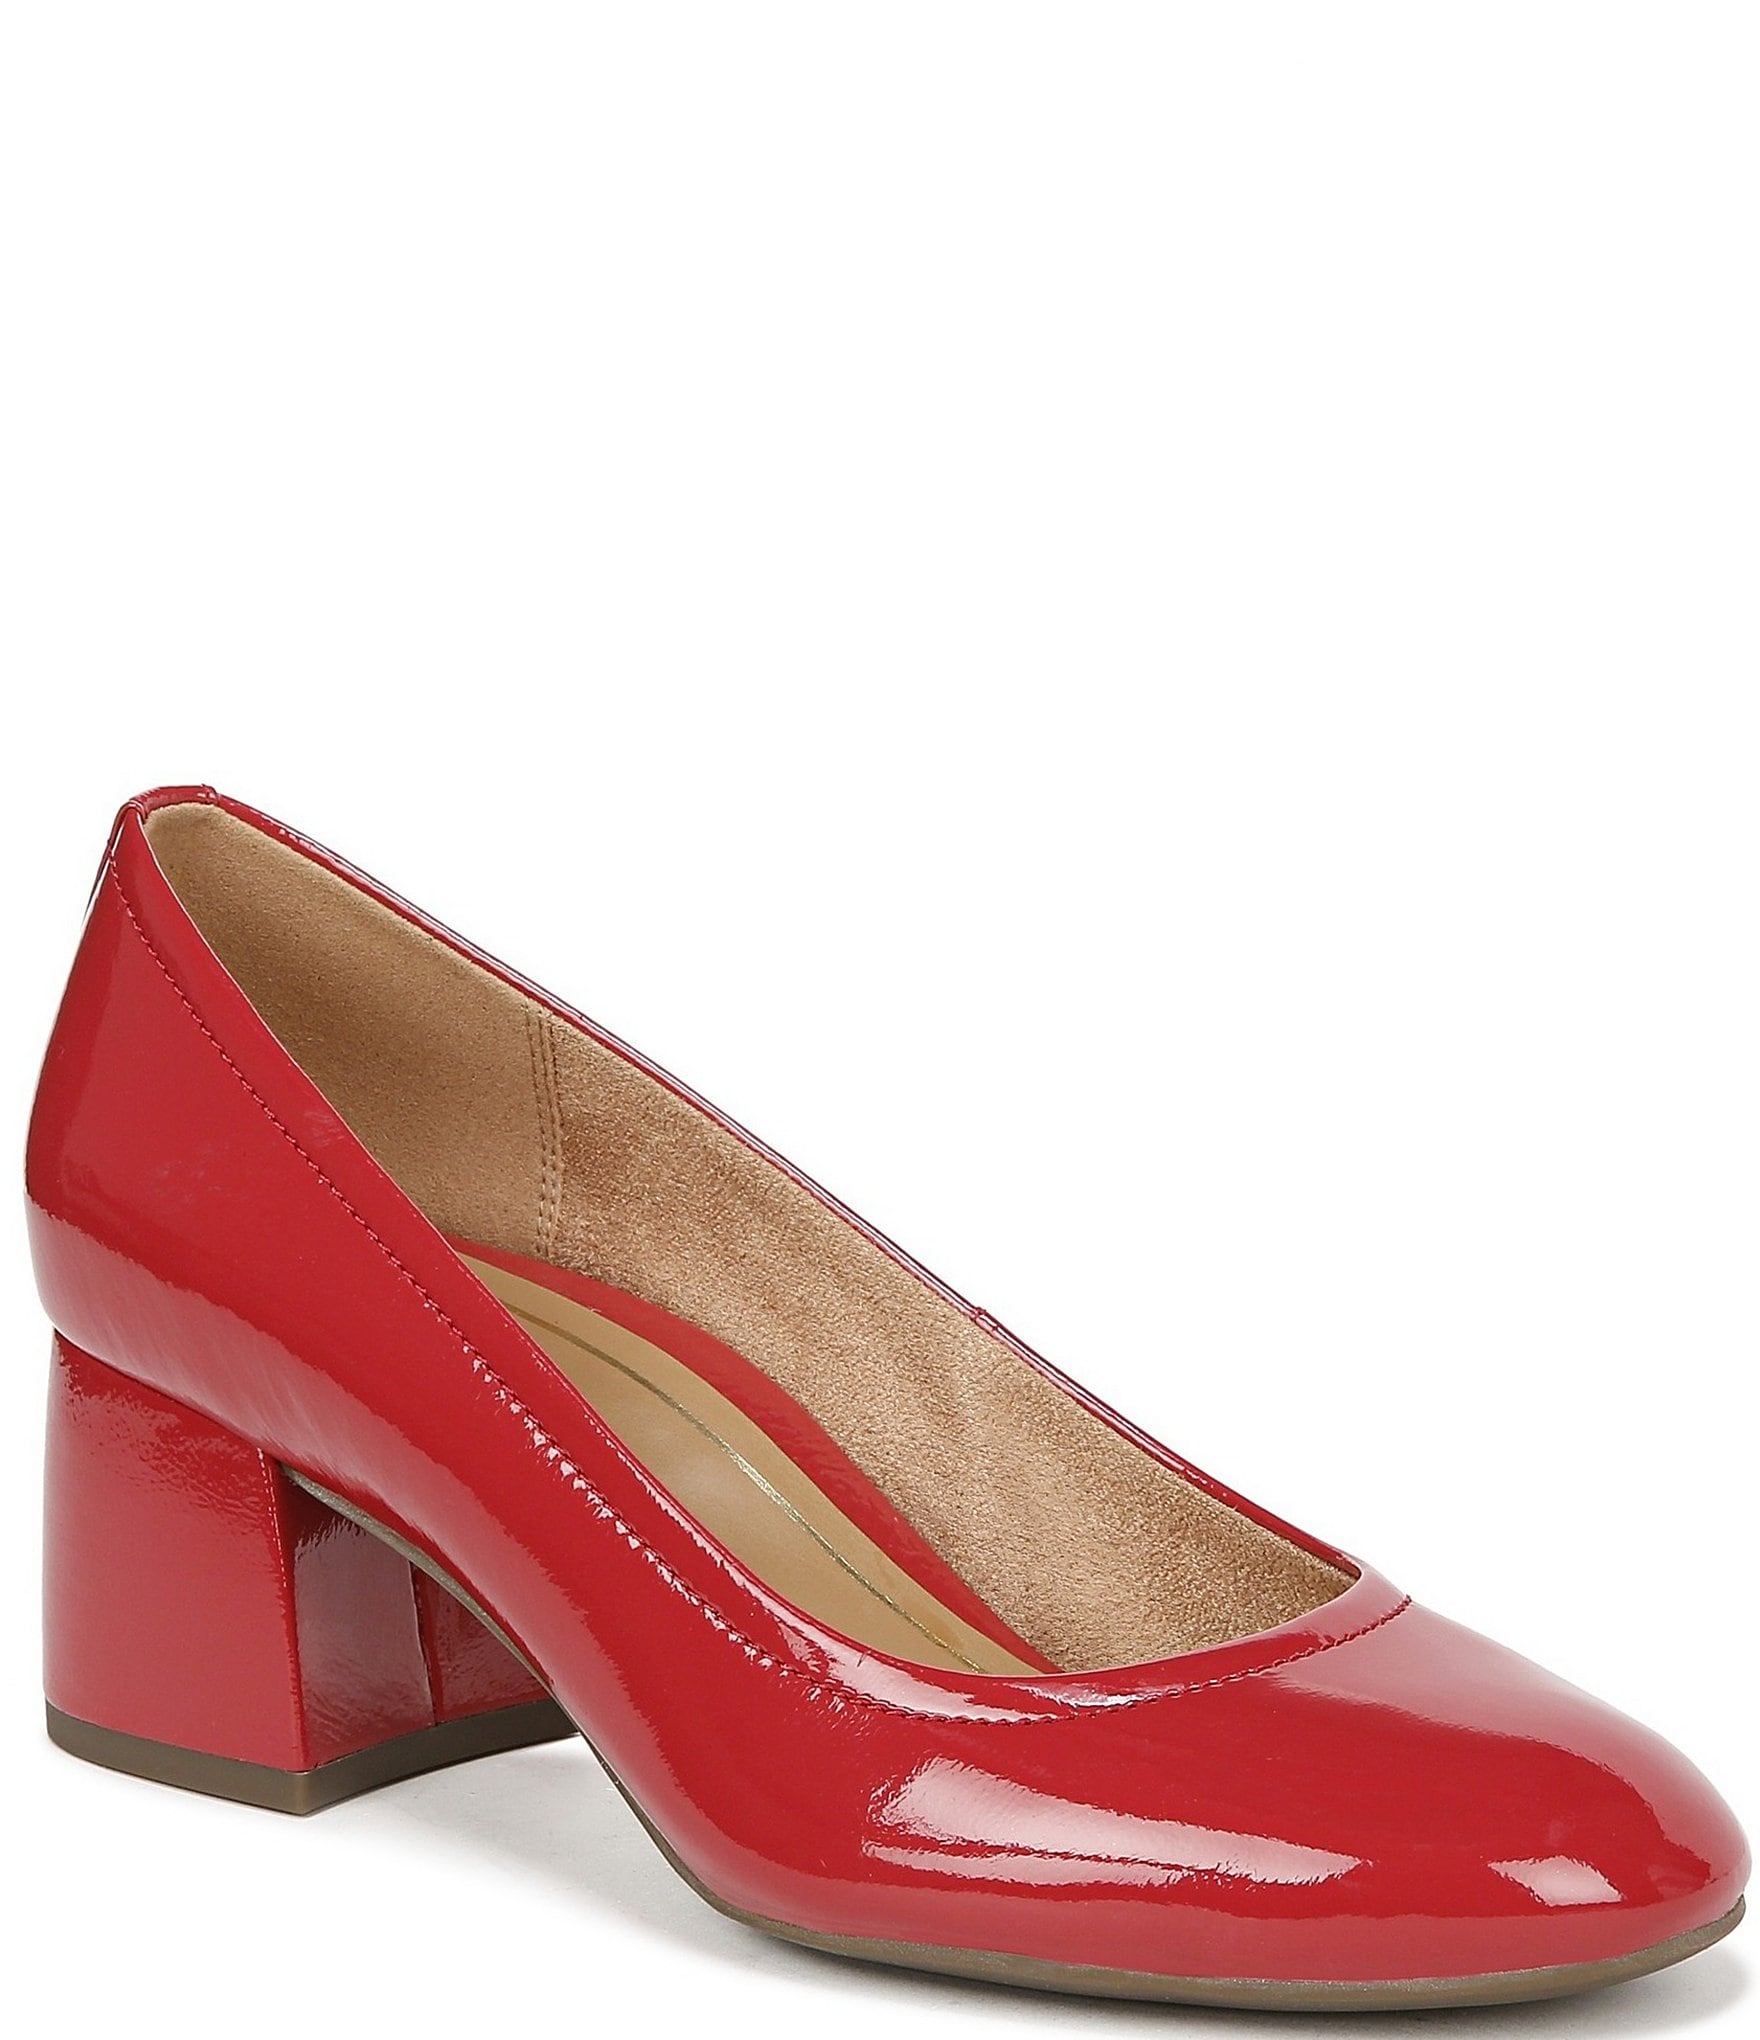 Walkfree Women Red Heels - Buy Walkfree Women Red Heels Online at Best  Price - Shop Online for Footwears in India | Flipkart.com